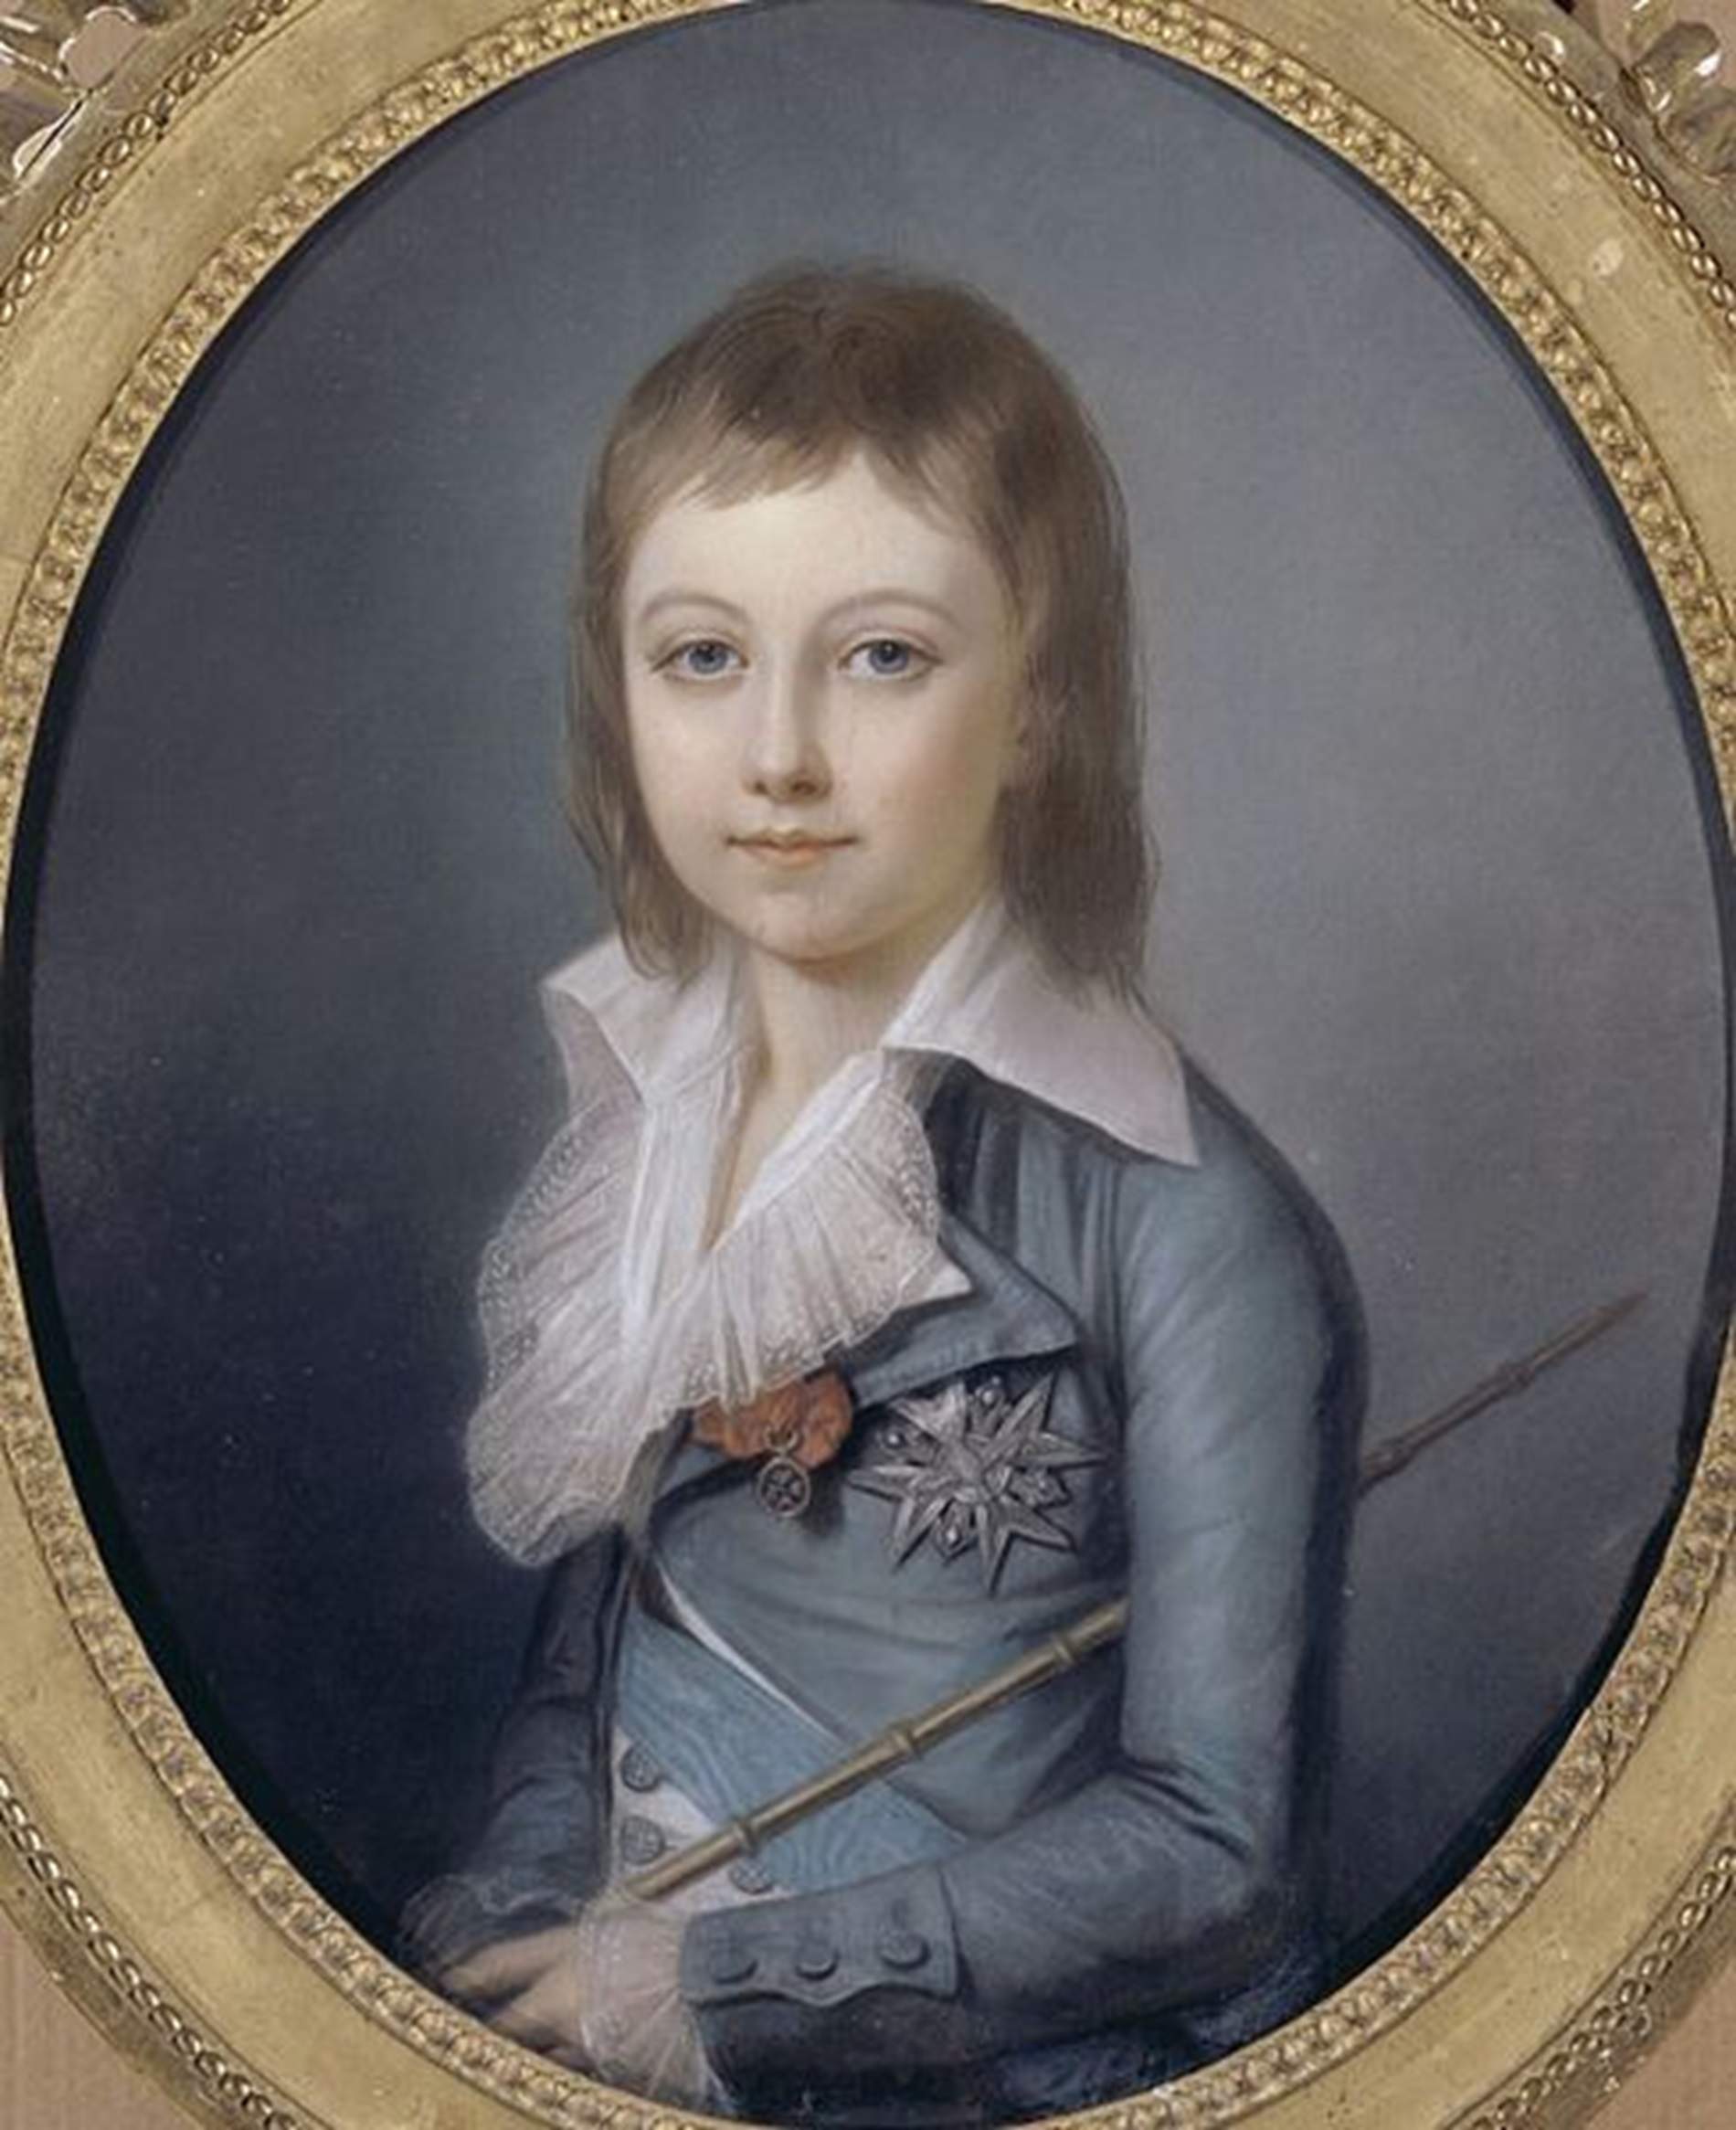 Declaren la mort del misteriós fill de Lluís XVI i Maria Antonieta